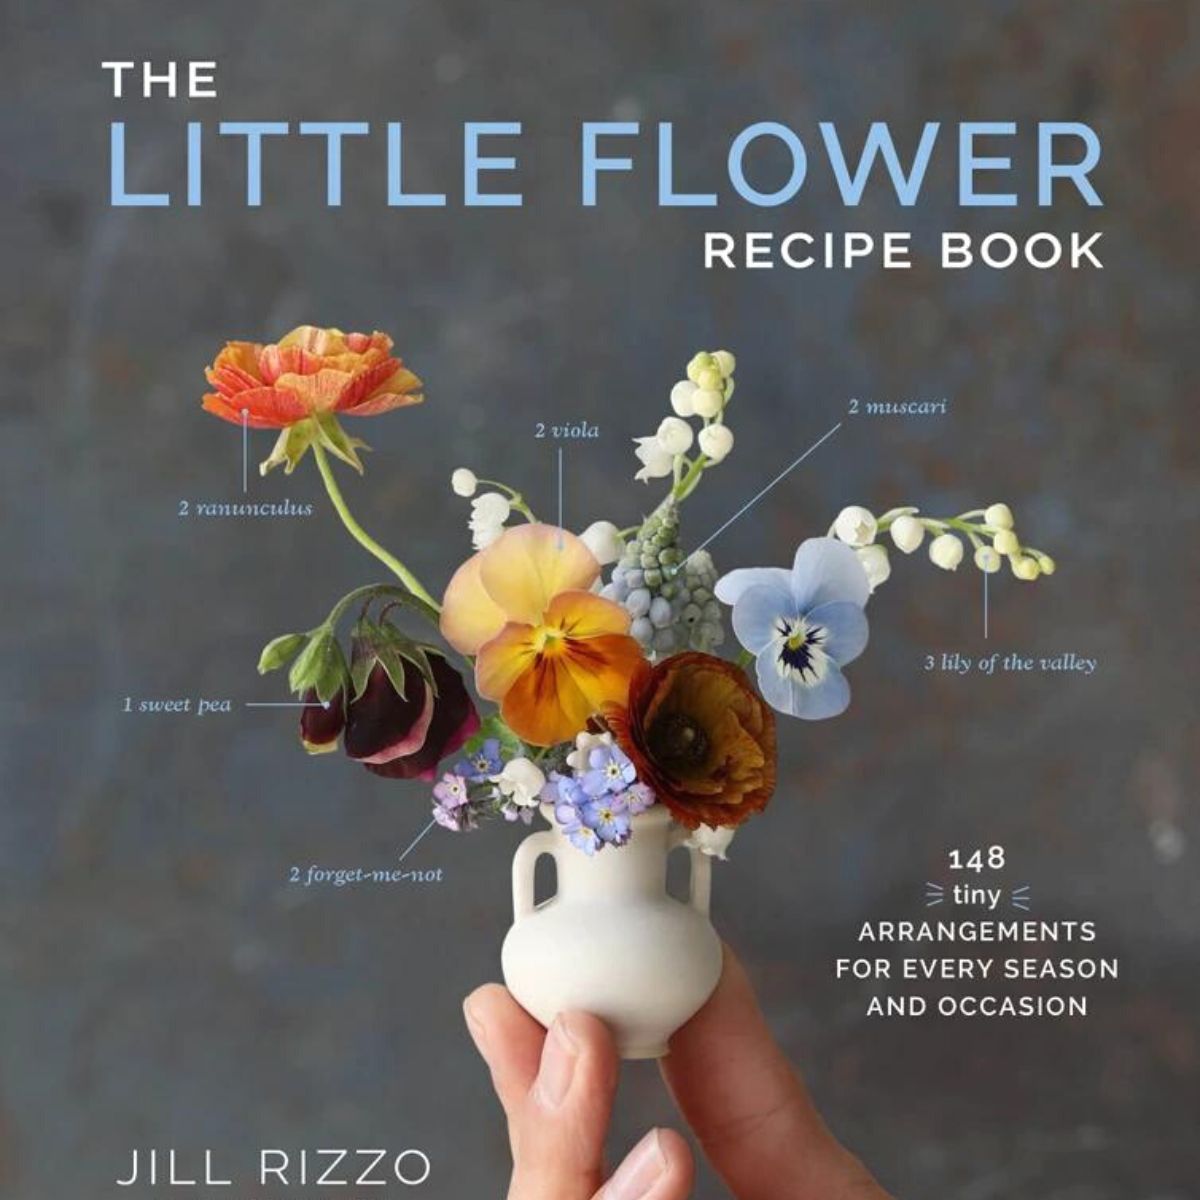 The Little Flower book